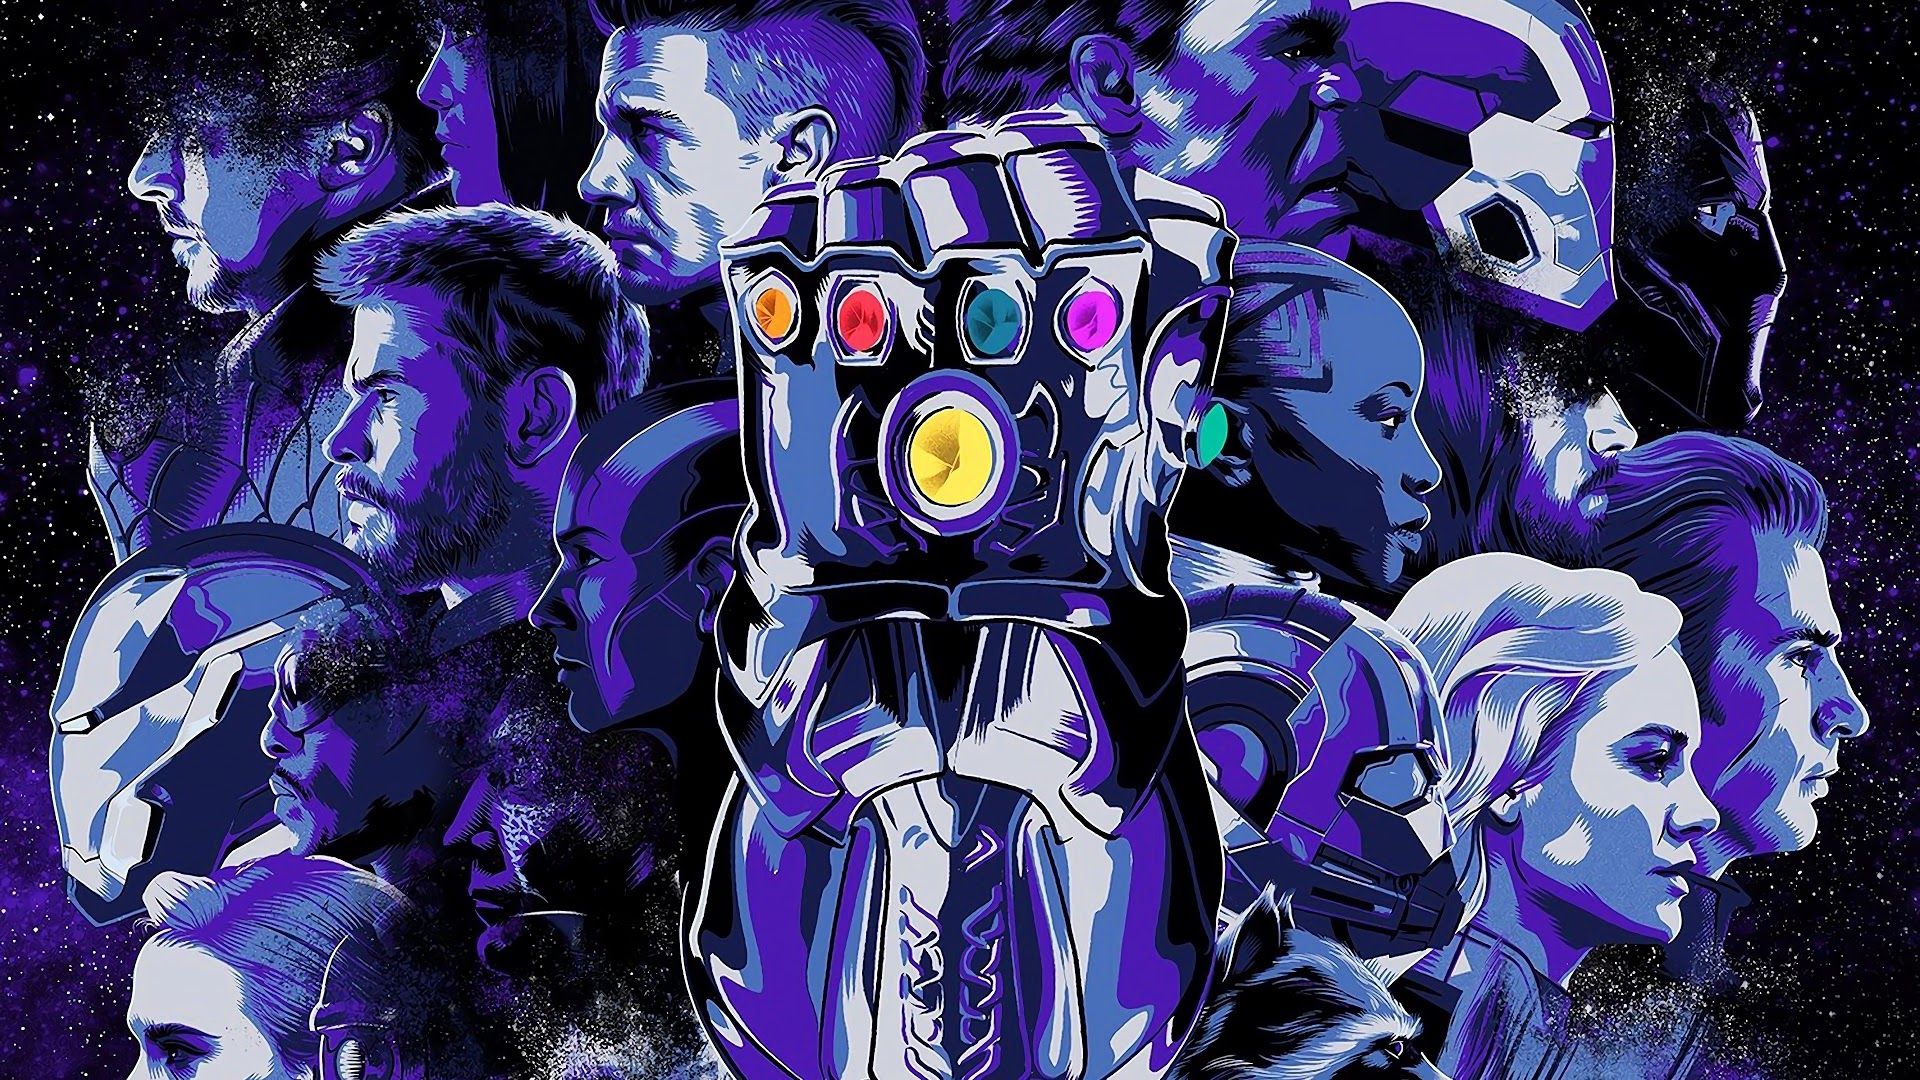 Avengers: Endgame Infinity Gauntlet 4K Wallpaper